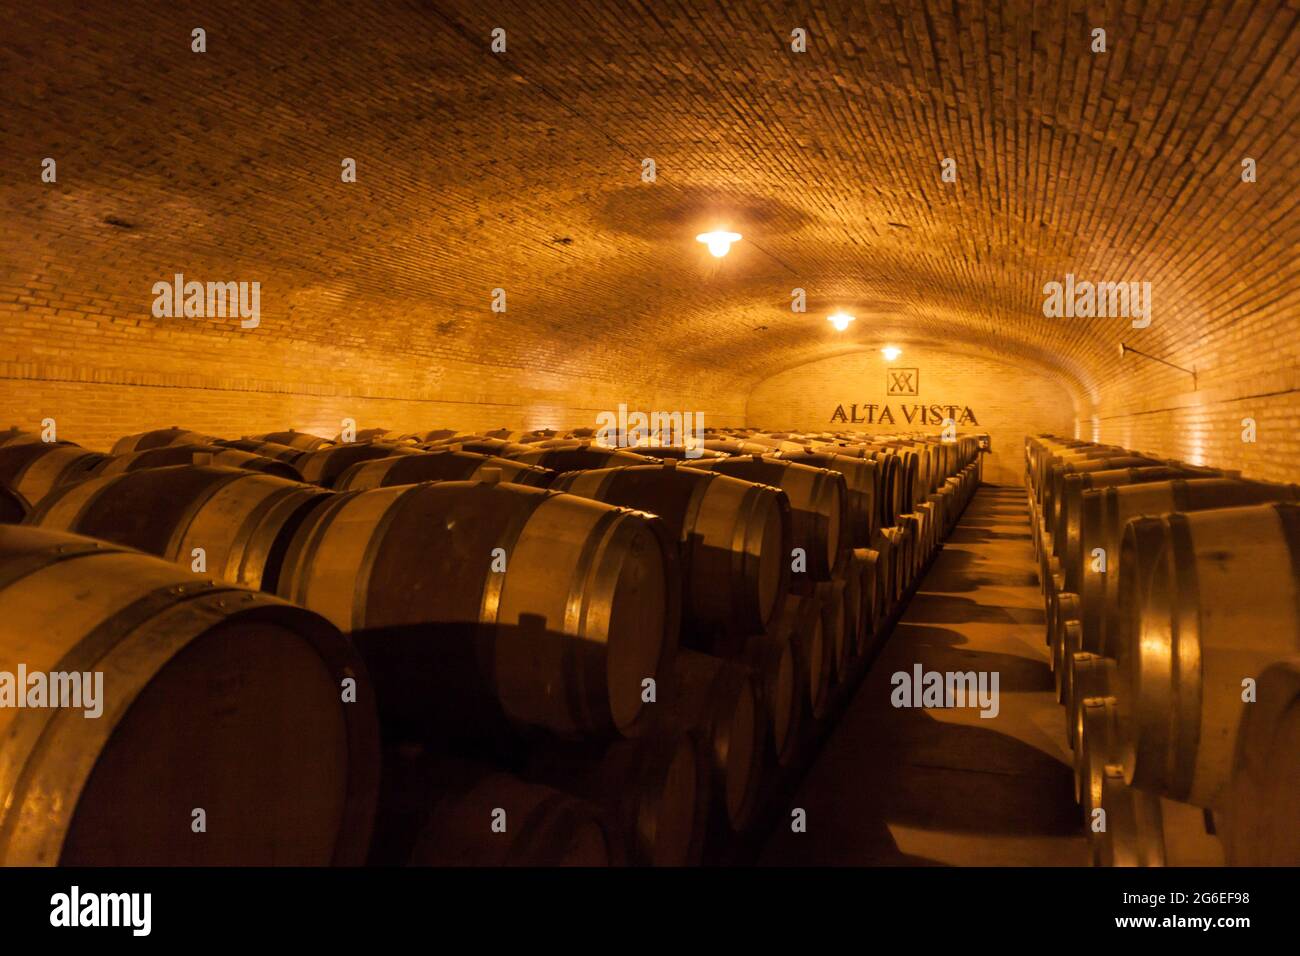 CHACRAS DE CORIA, ARGENTINIEN - 1. AUG 2015: Weinkeller des Weinguts Altavista im Dorf Chacras de Coria, in der Nähe von Mendoza, Argentinien Stockfoto